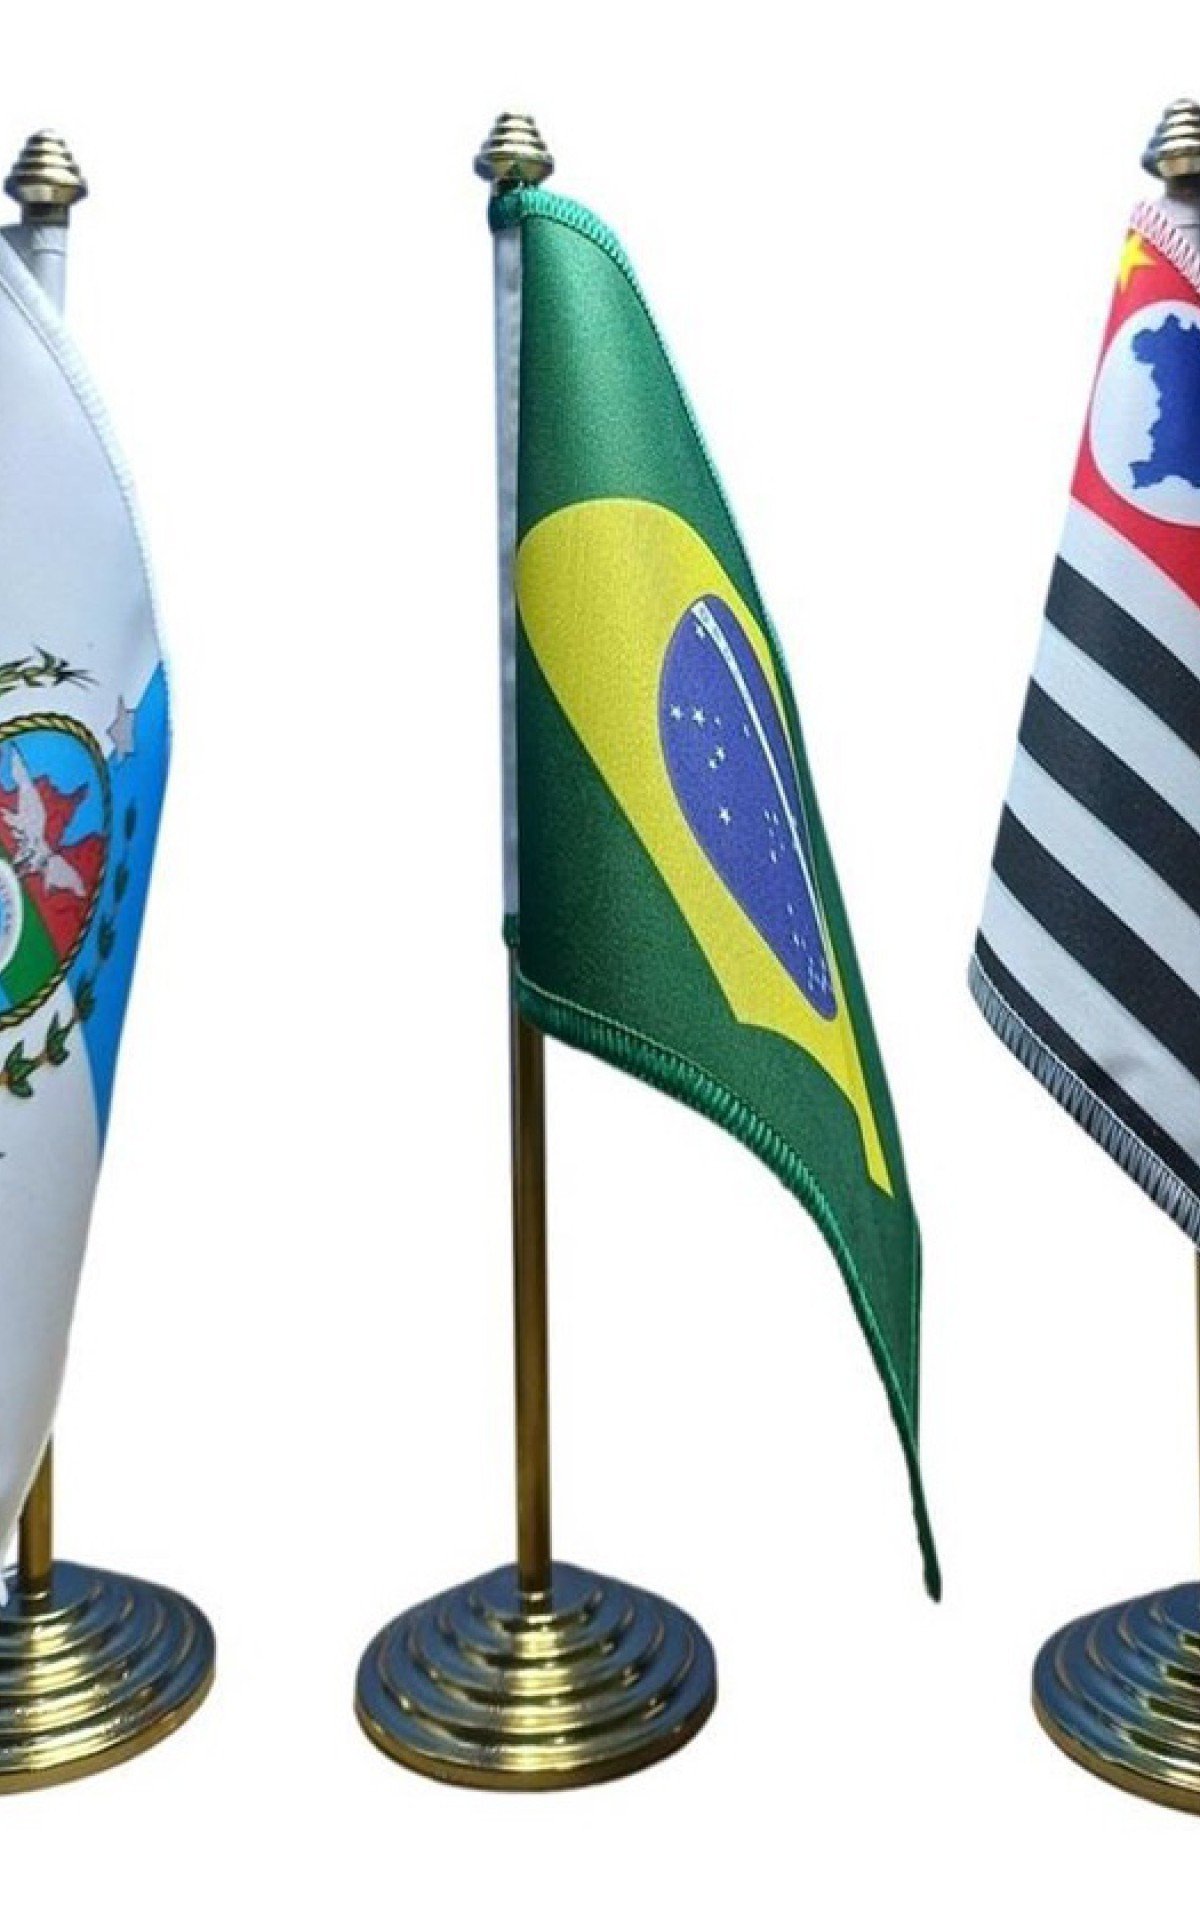 Rio e SP disputam investidores estrangeiros - foto montagem da coluna